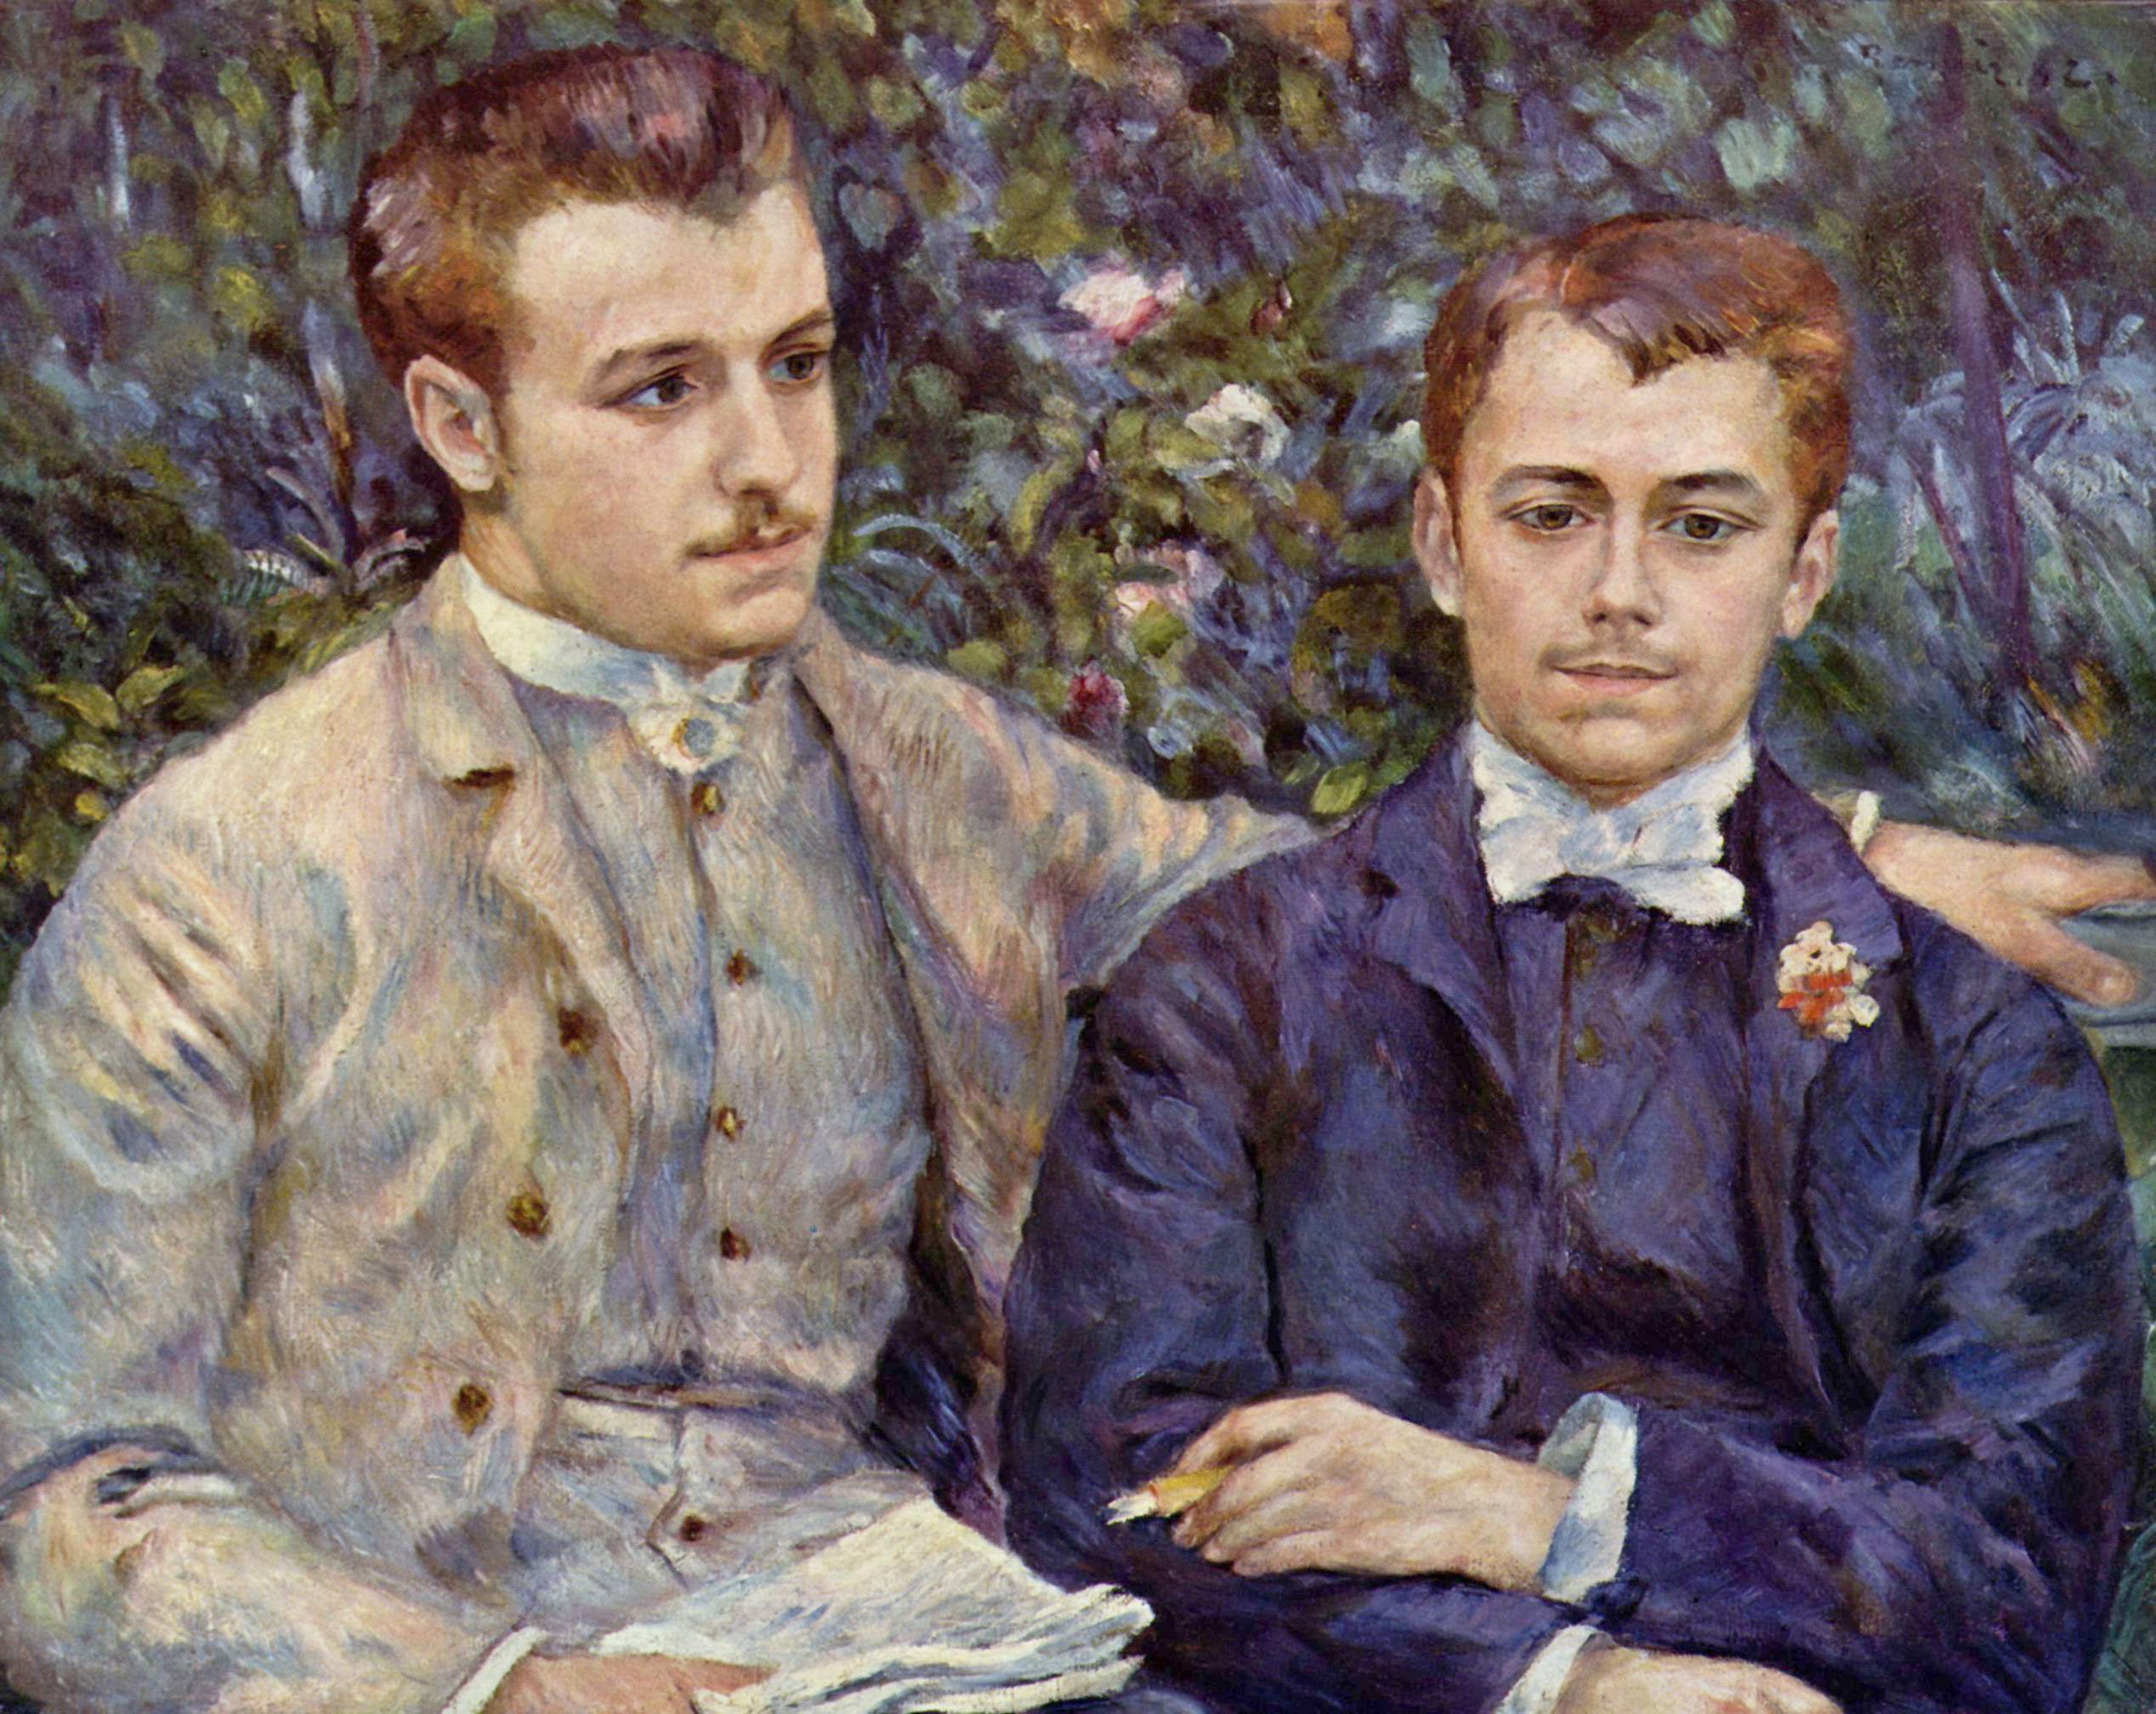 Portrait de Charles et Georges Durand-Ruel by Pierre-Auguste Renoir - 1882 - 65 x 81 cm collection privée